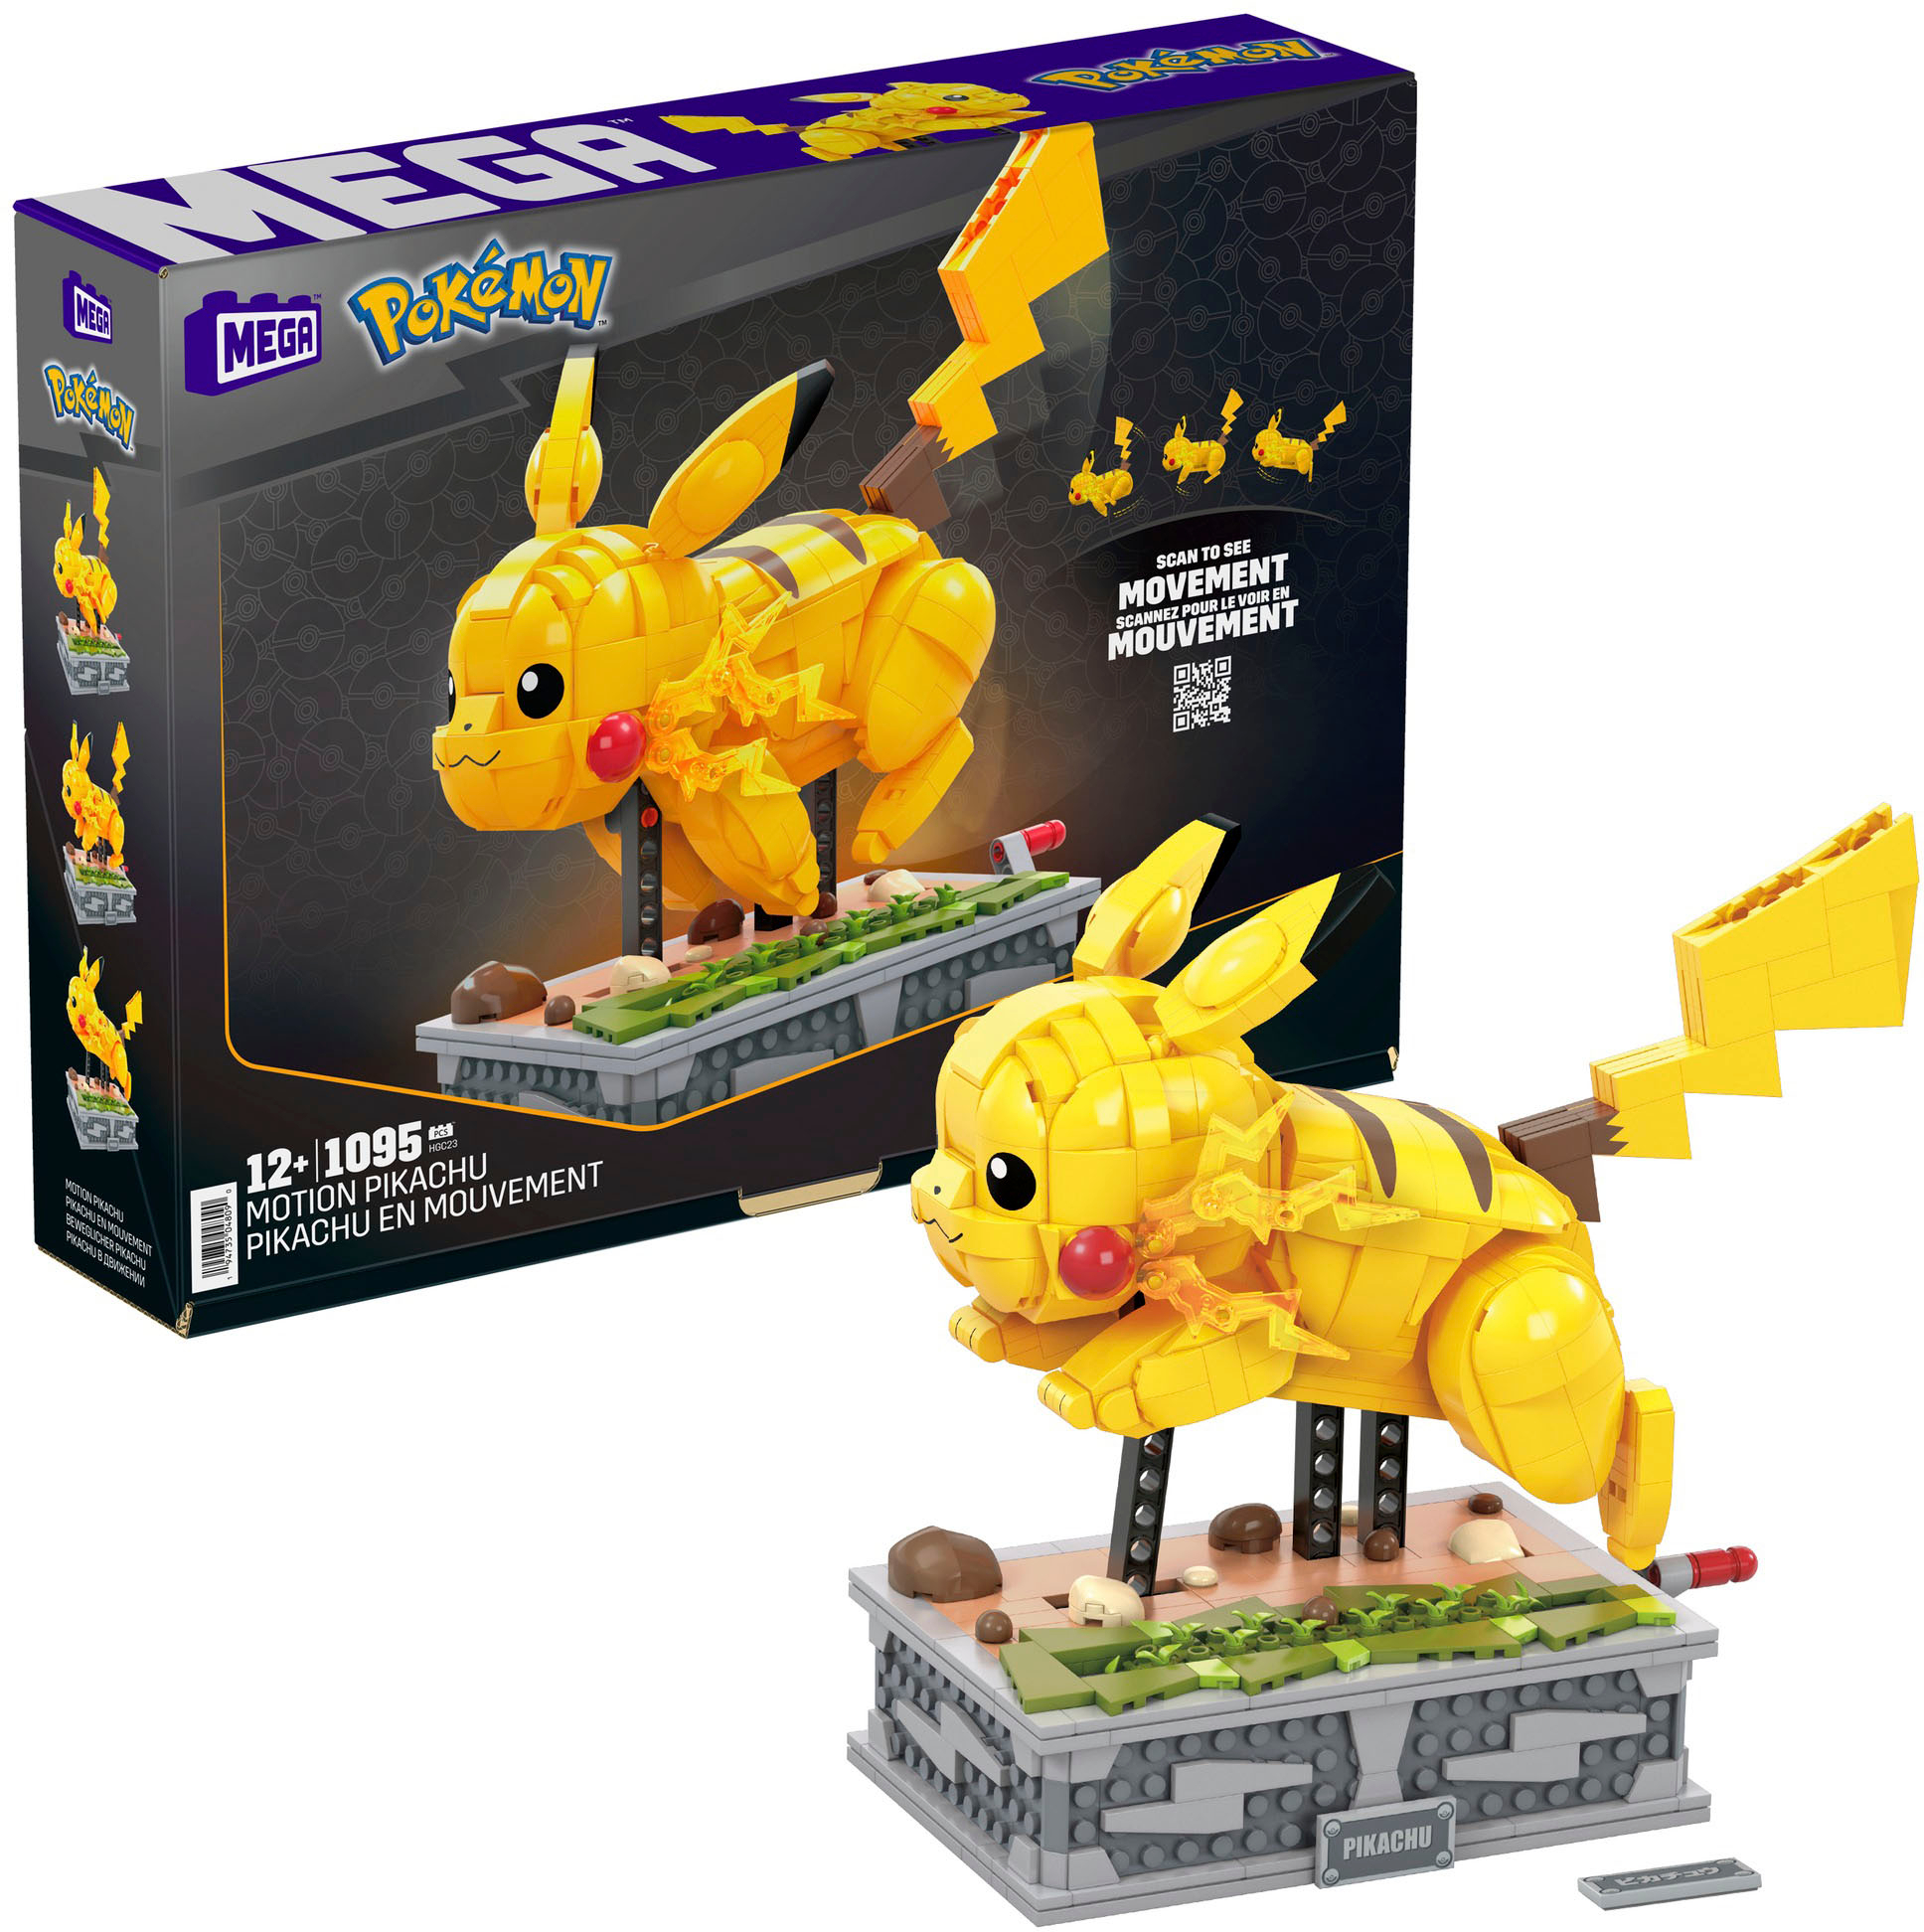 MEGA Pokémon Build & Show Pikachu Building Set - 211pcs